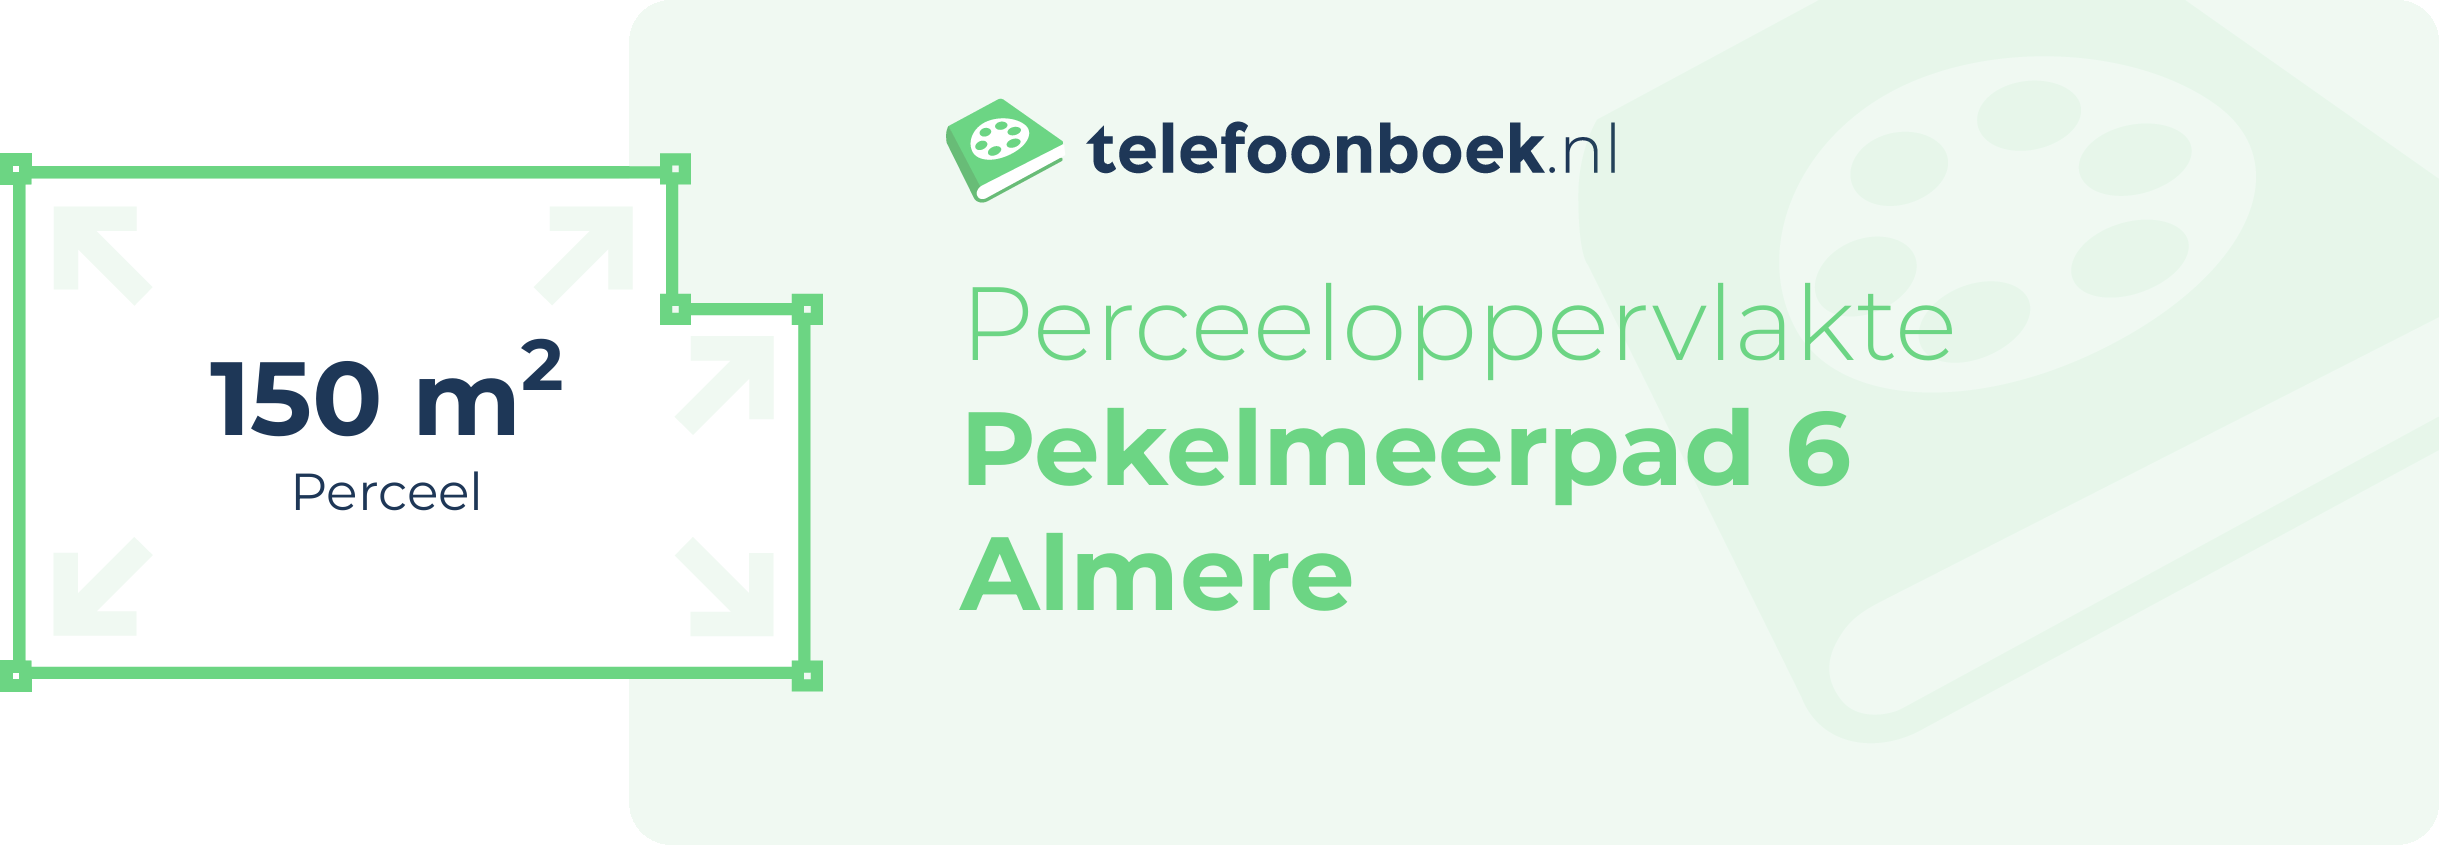 Perceeloppervlakte Pekelmeerpad 6 Almere